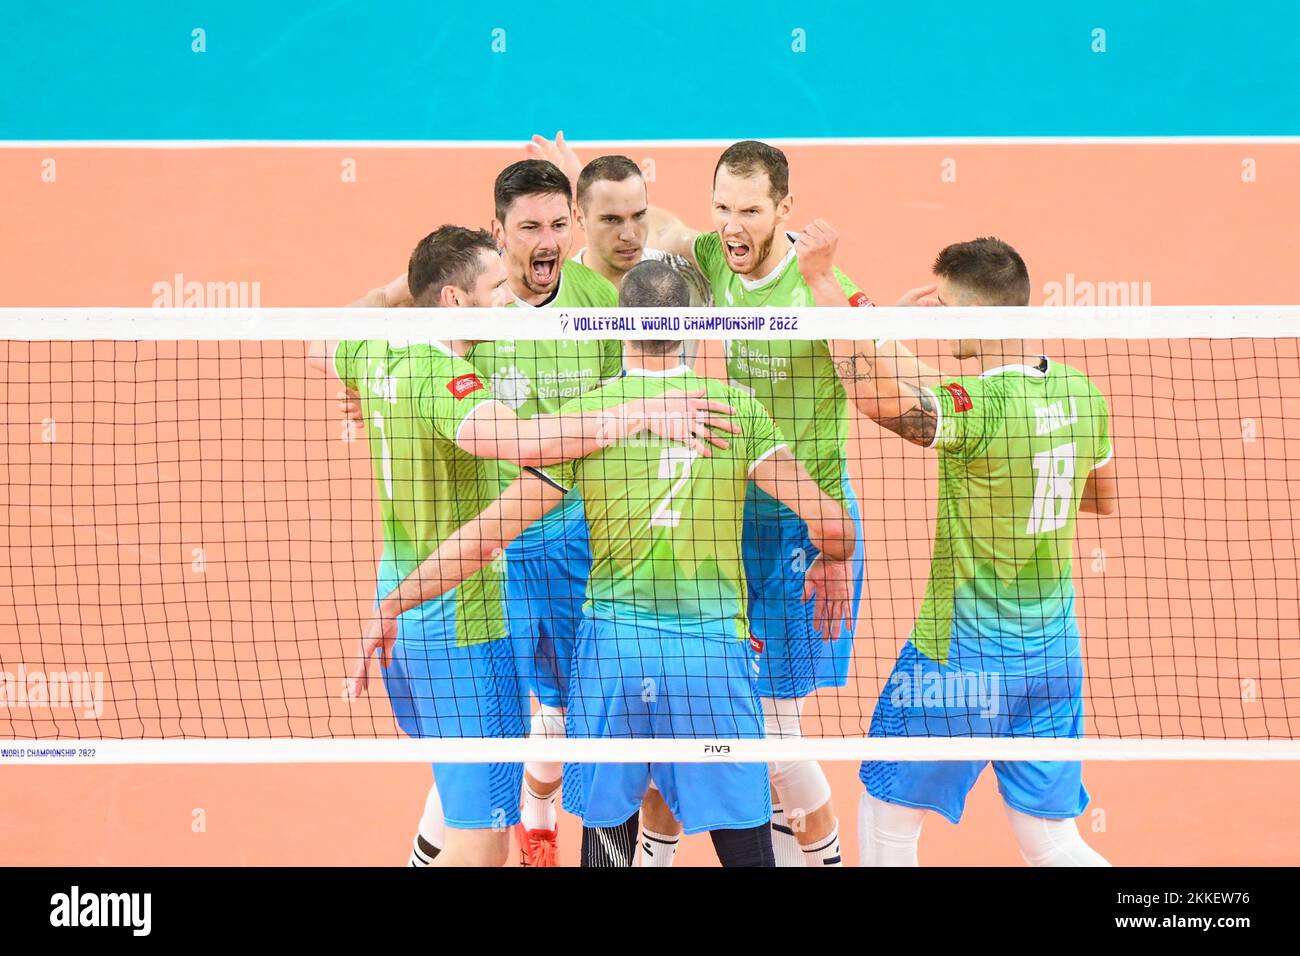 Die slowenische Volleyballnationalmannschaft feiert den Sieg gegen die Ukraine. Volleyball-Weltmeisterschaft 2022. Viertelfinale Stockfoto